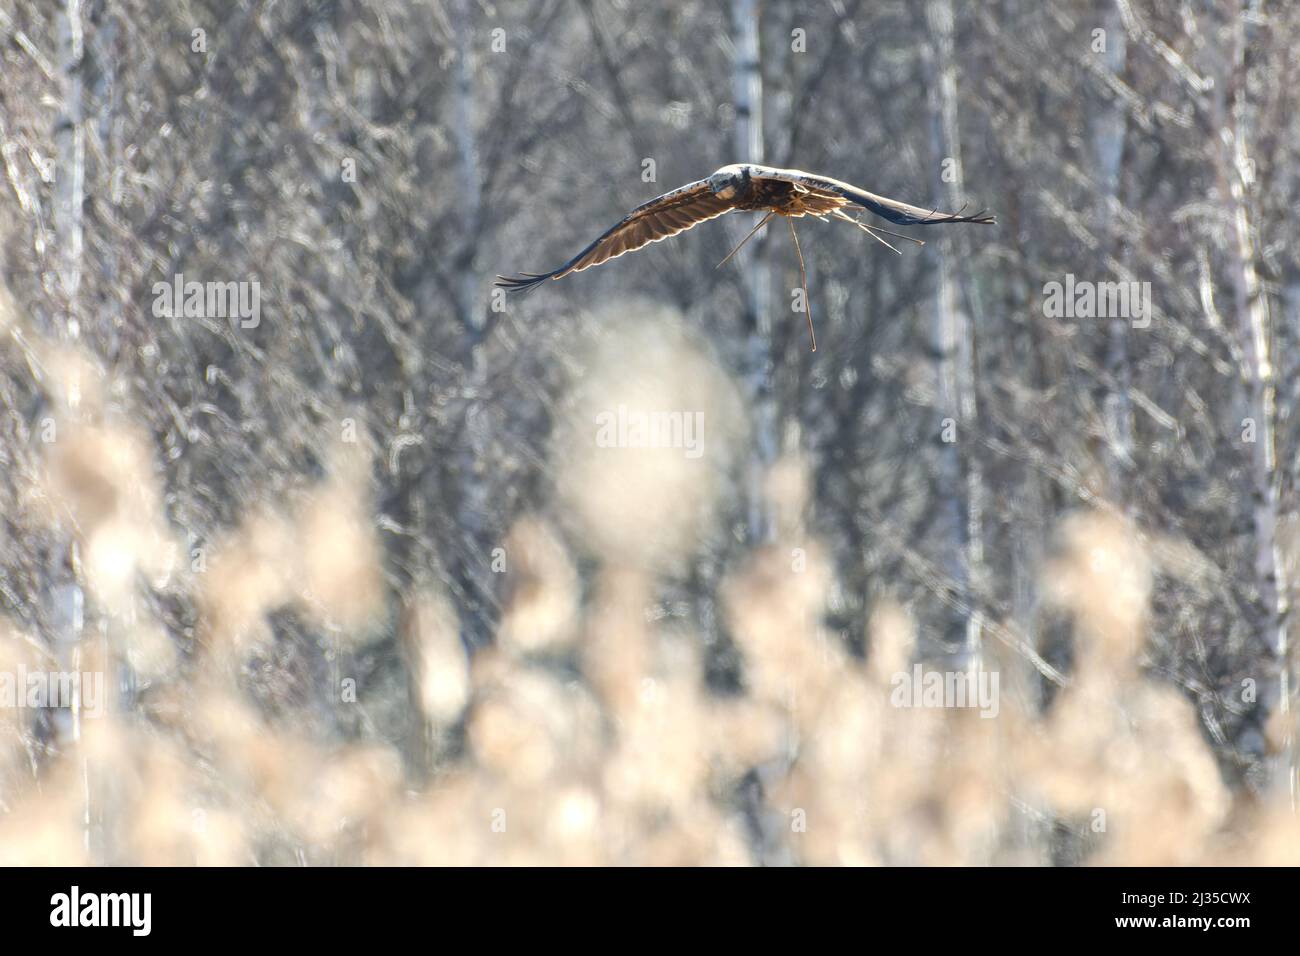 Weibliche westliche Sumpfweihe, die im Birkenwald hinter Schilf fliegt und am Frühlingsmorgen in Westfinnland Schilf für das Nest trägt. Stockfoto